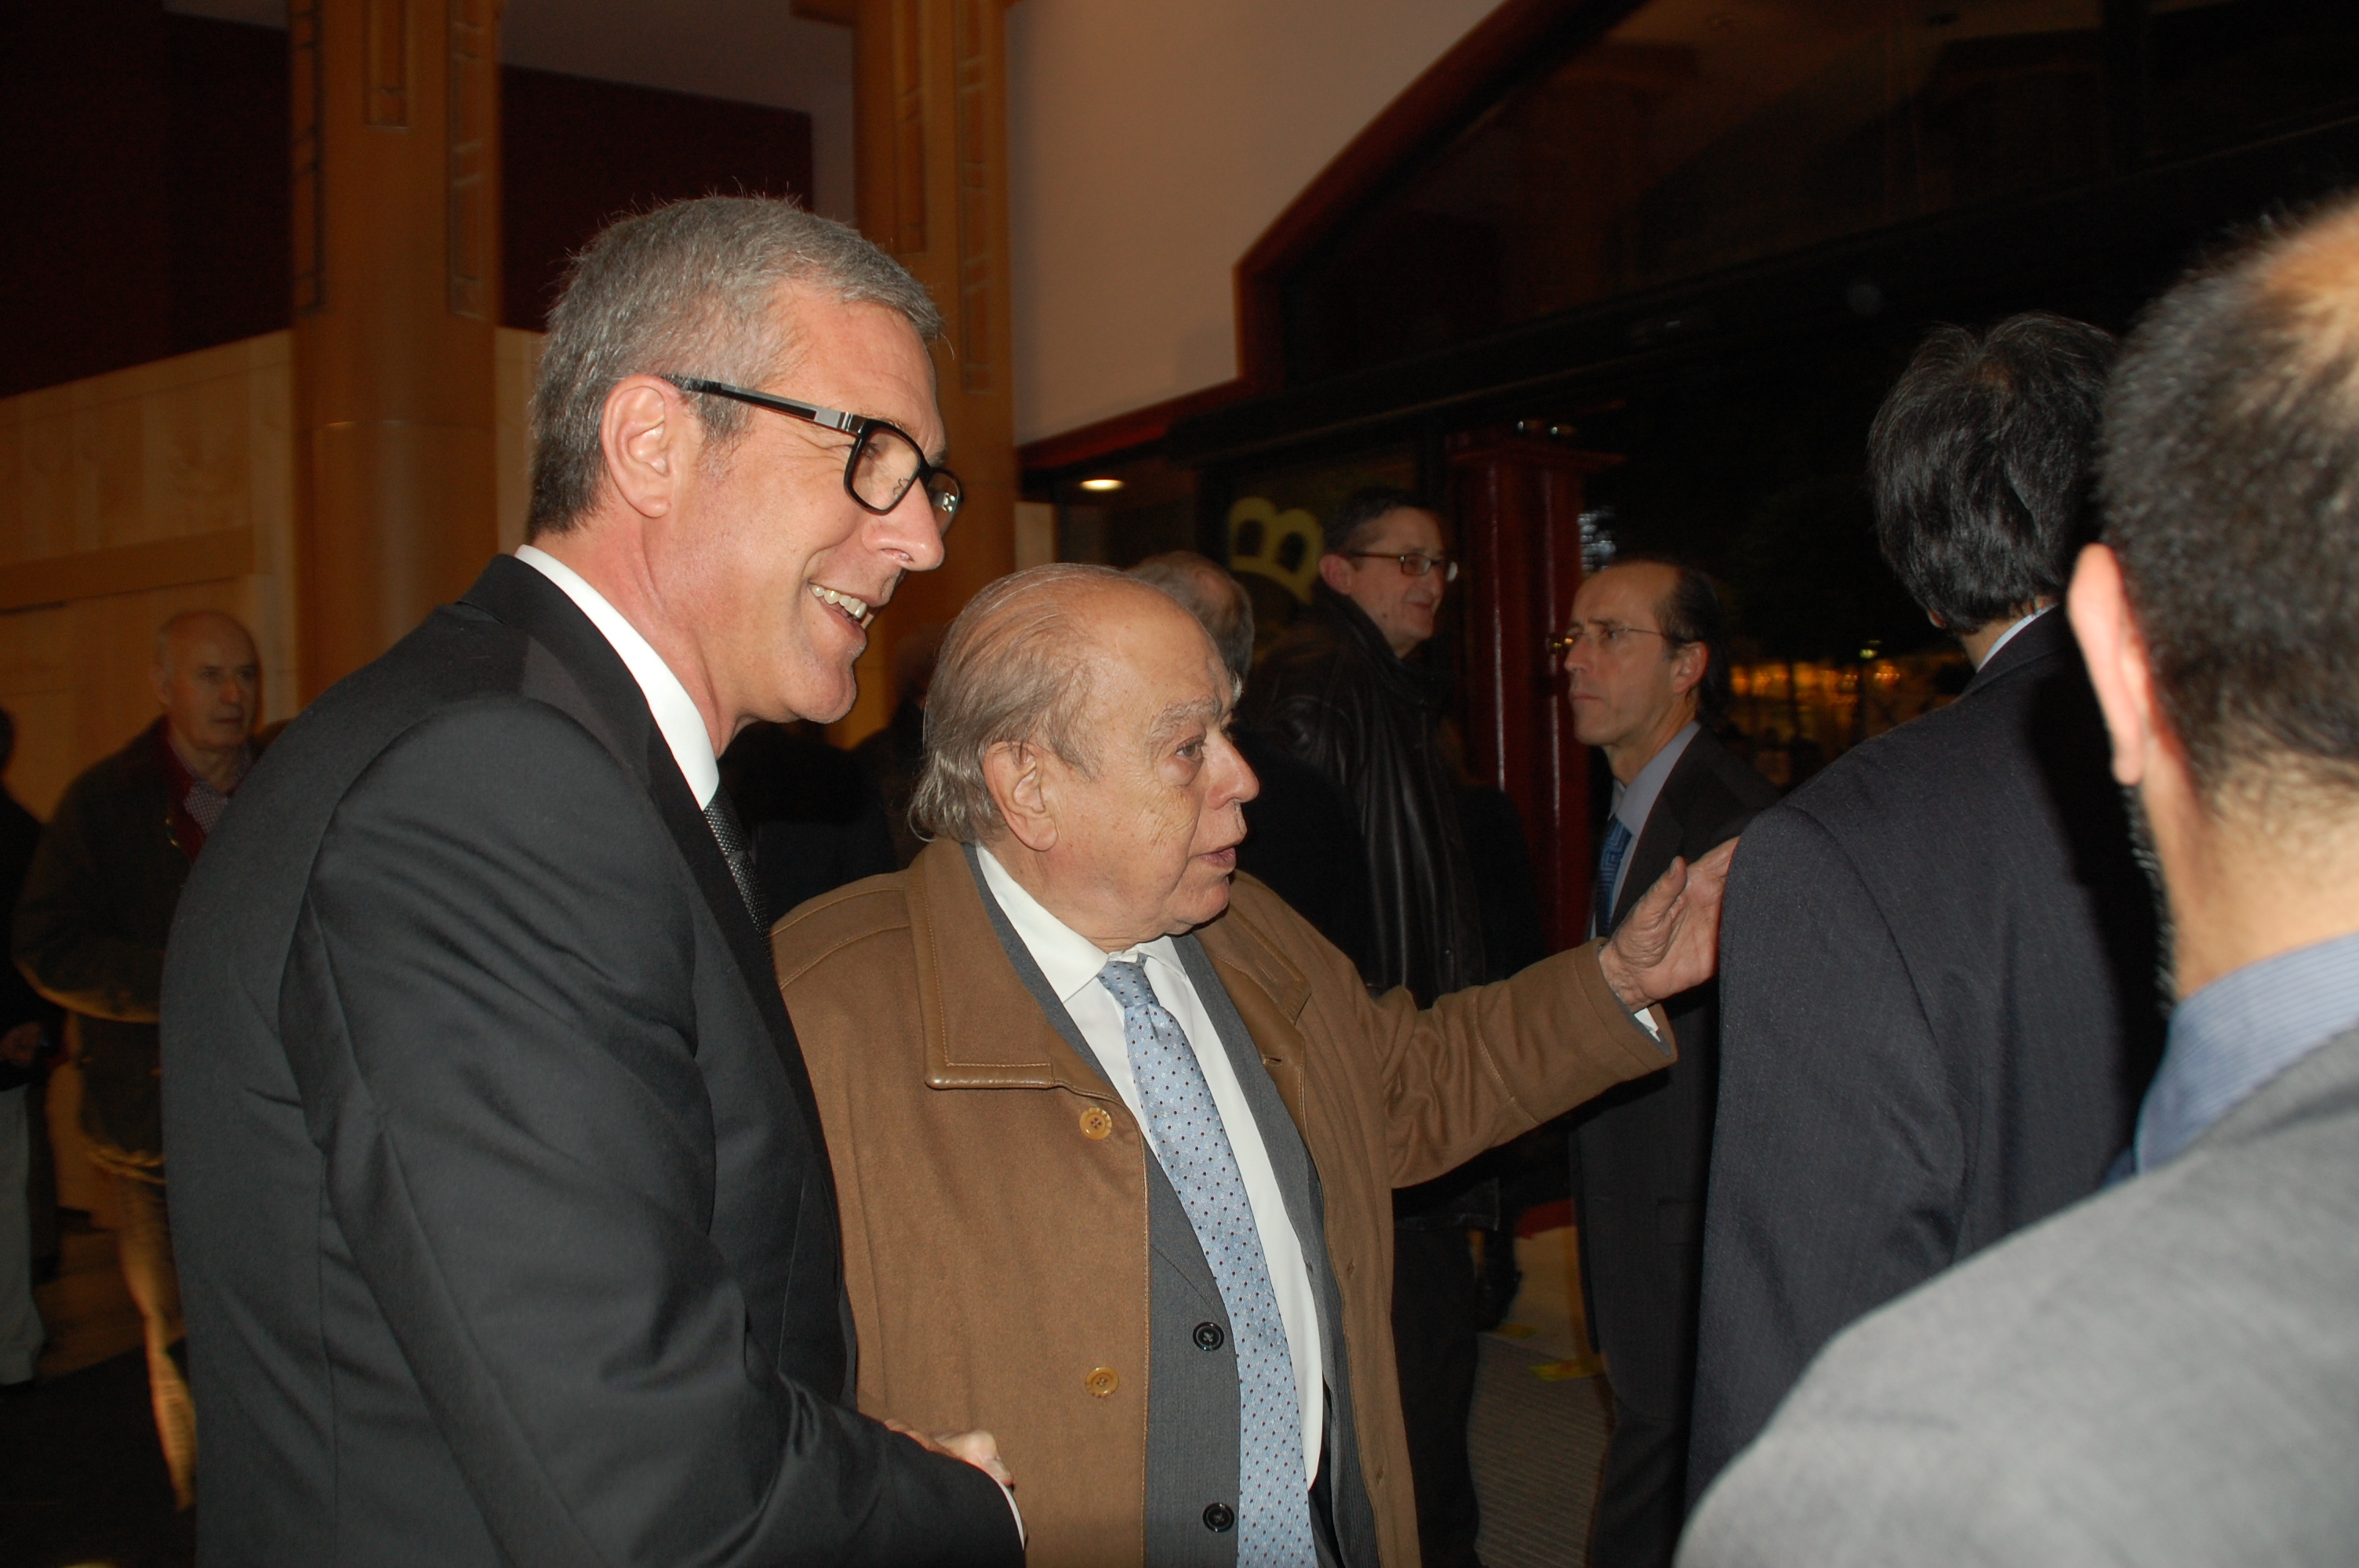 El president Jordi Pujol, rebut per l'alcalde Ballesteros al vestíbul del teatre Tarragona (foto: Mauri)